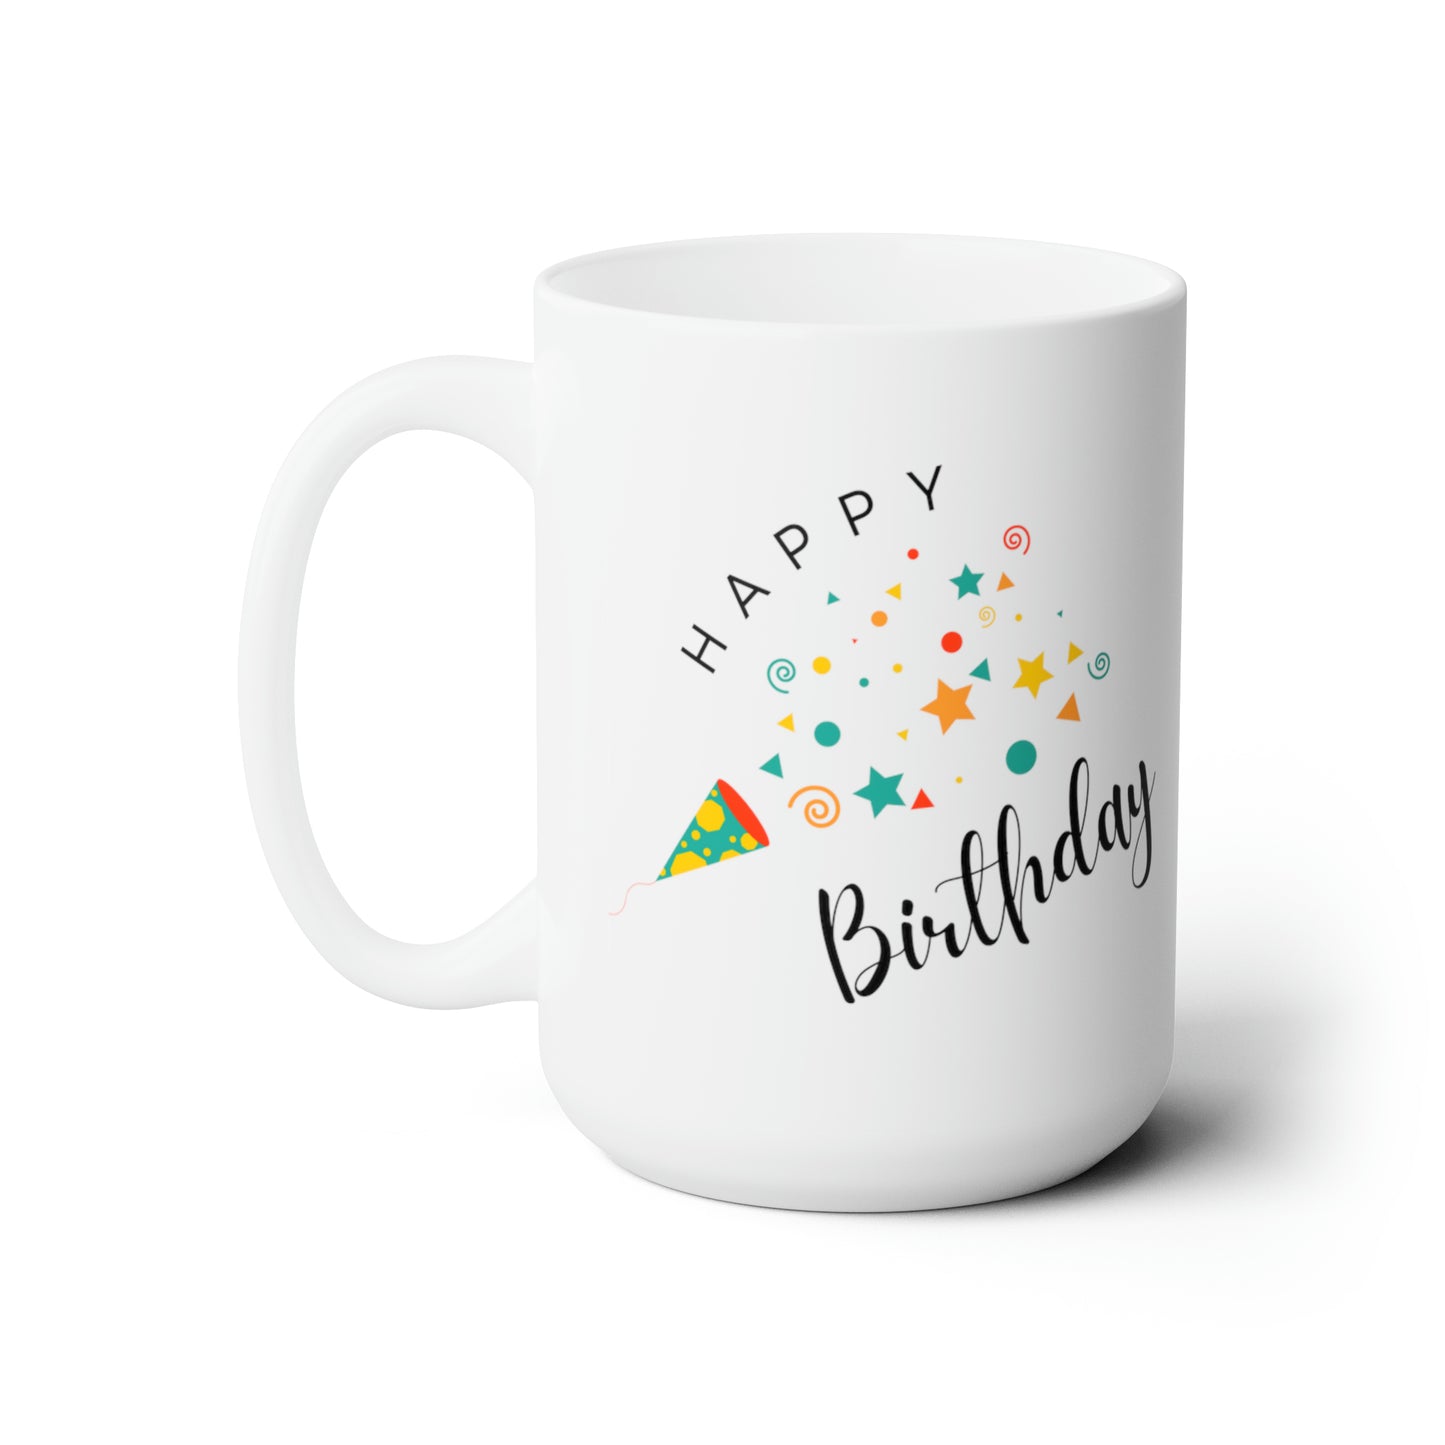 Happy Birthday Printed Mug, White, 15oz